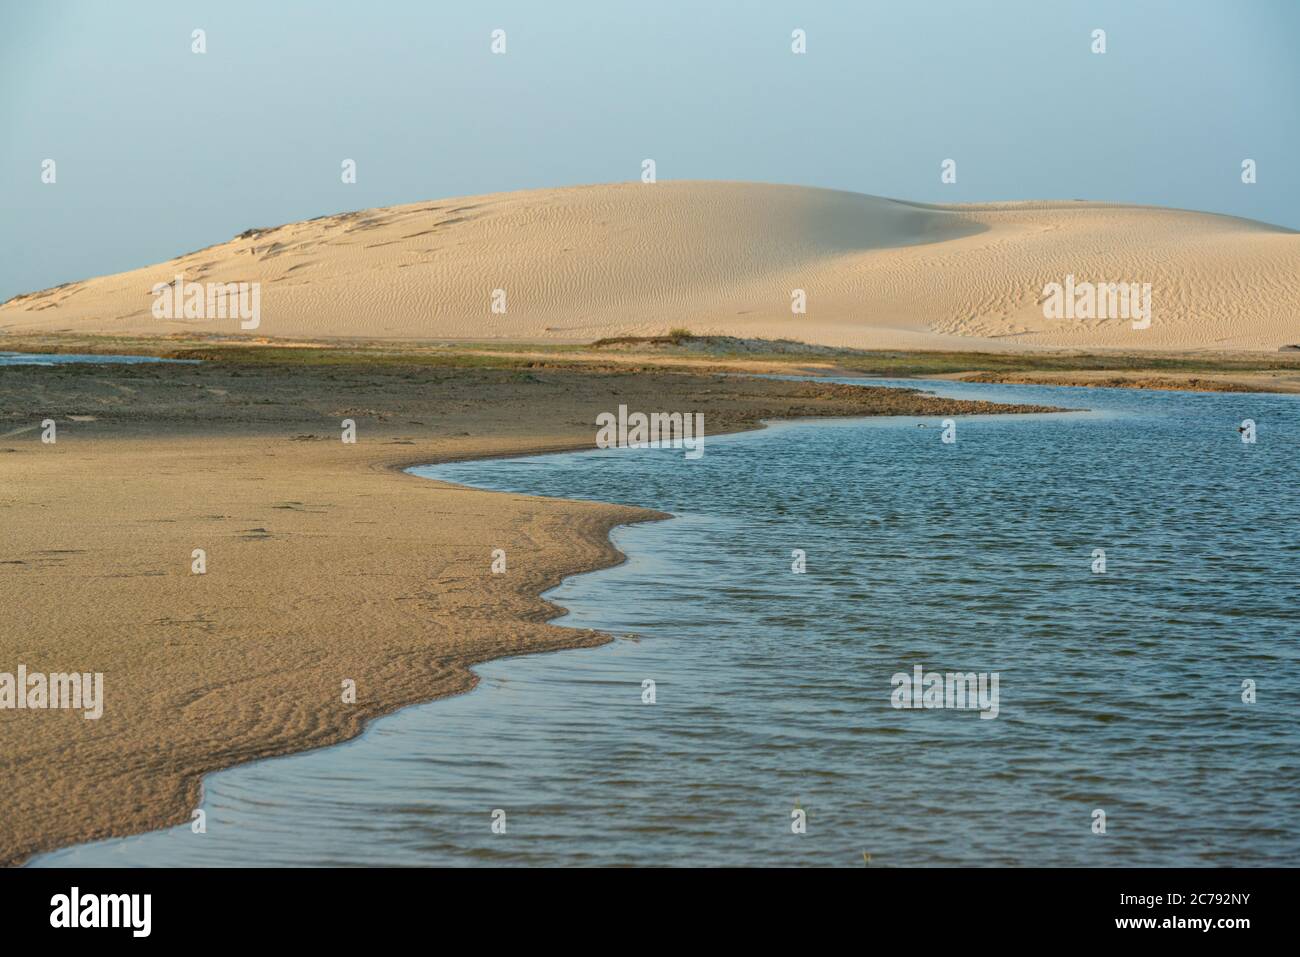 Dunes and lagoons near Jericoacoara beach in Tatajuba, Camocim, Ceara, Brazil Stock Photo